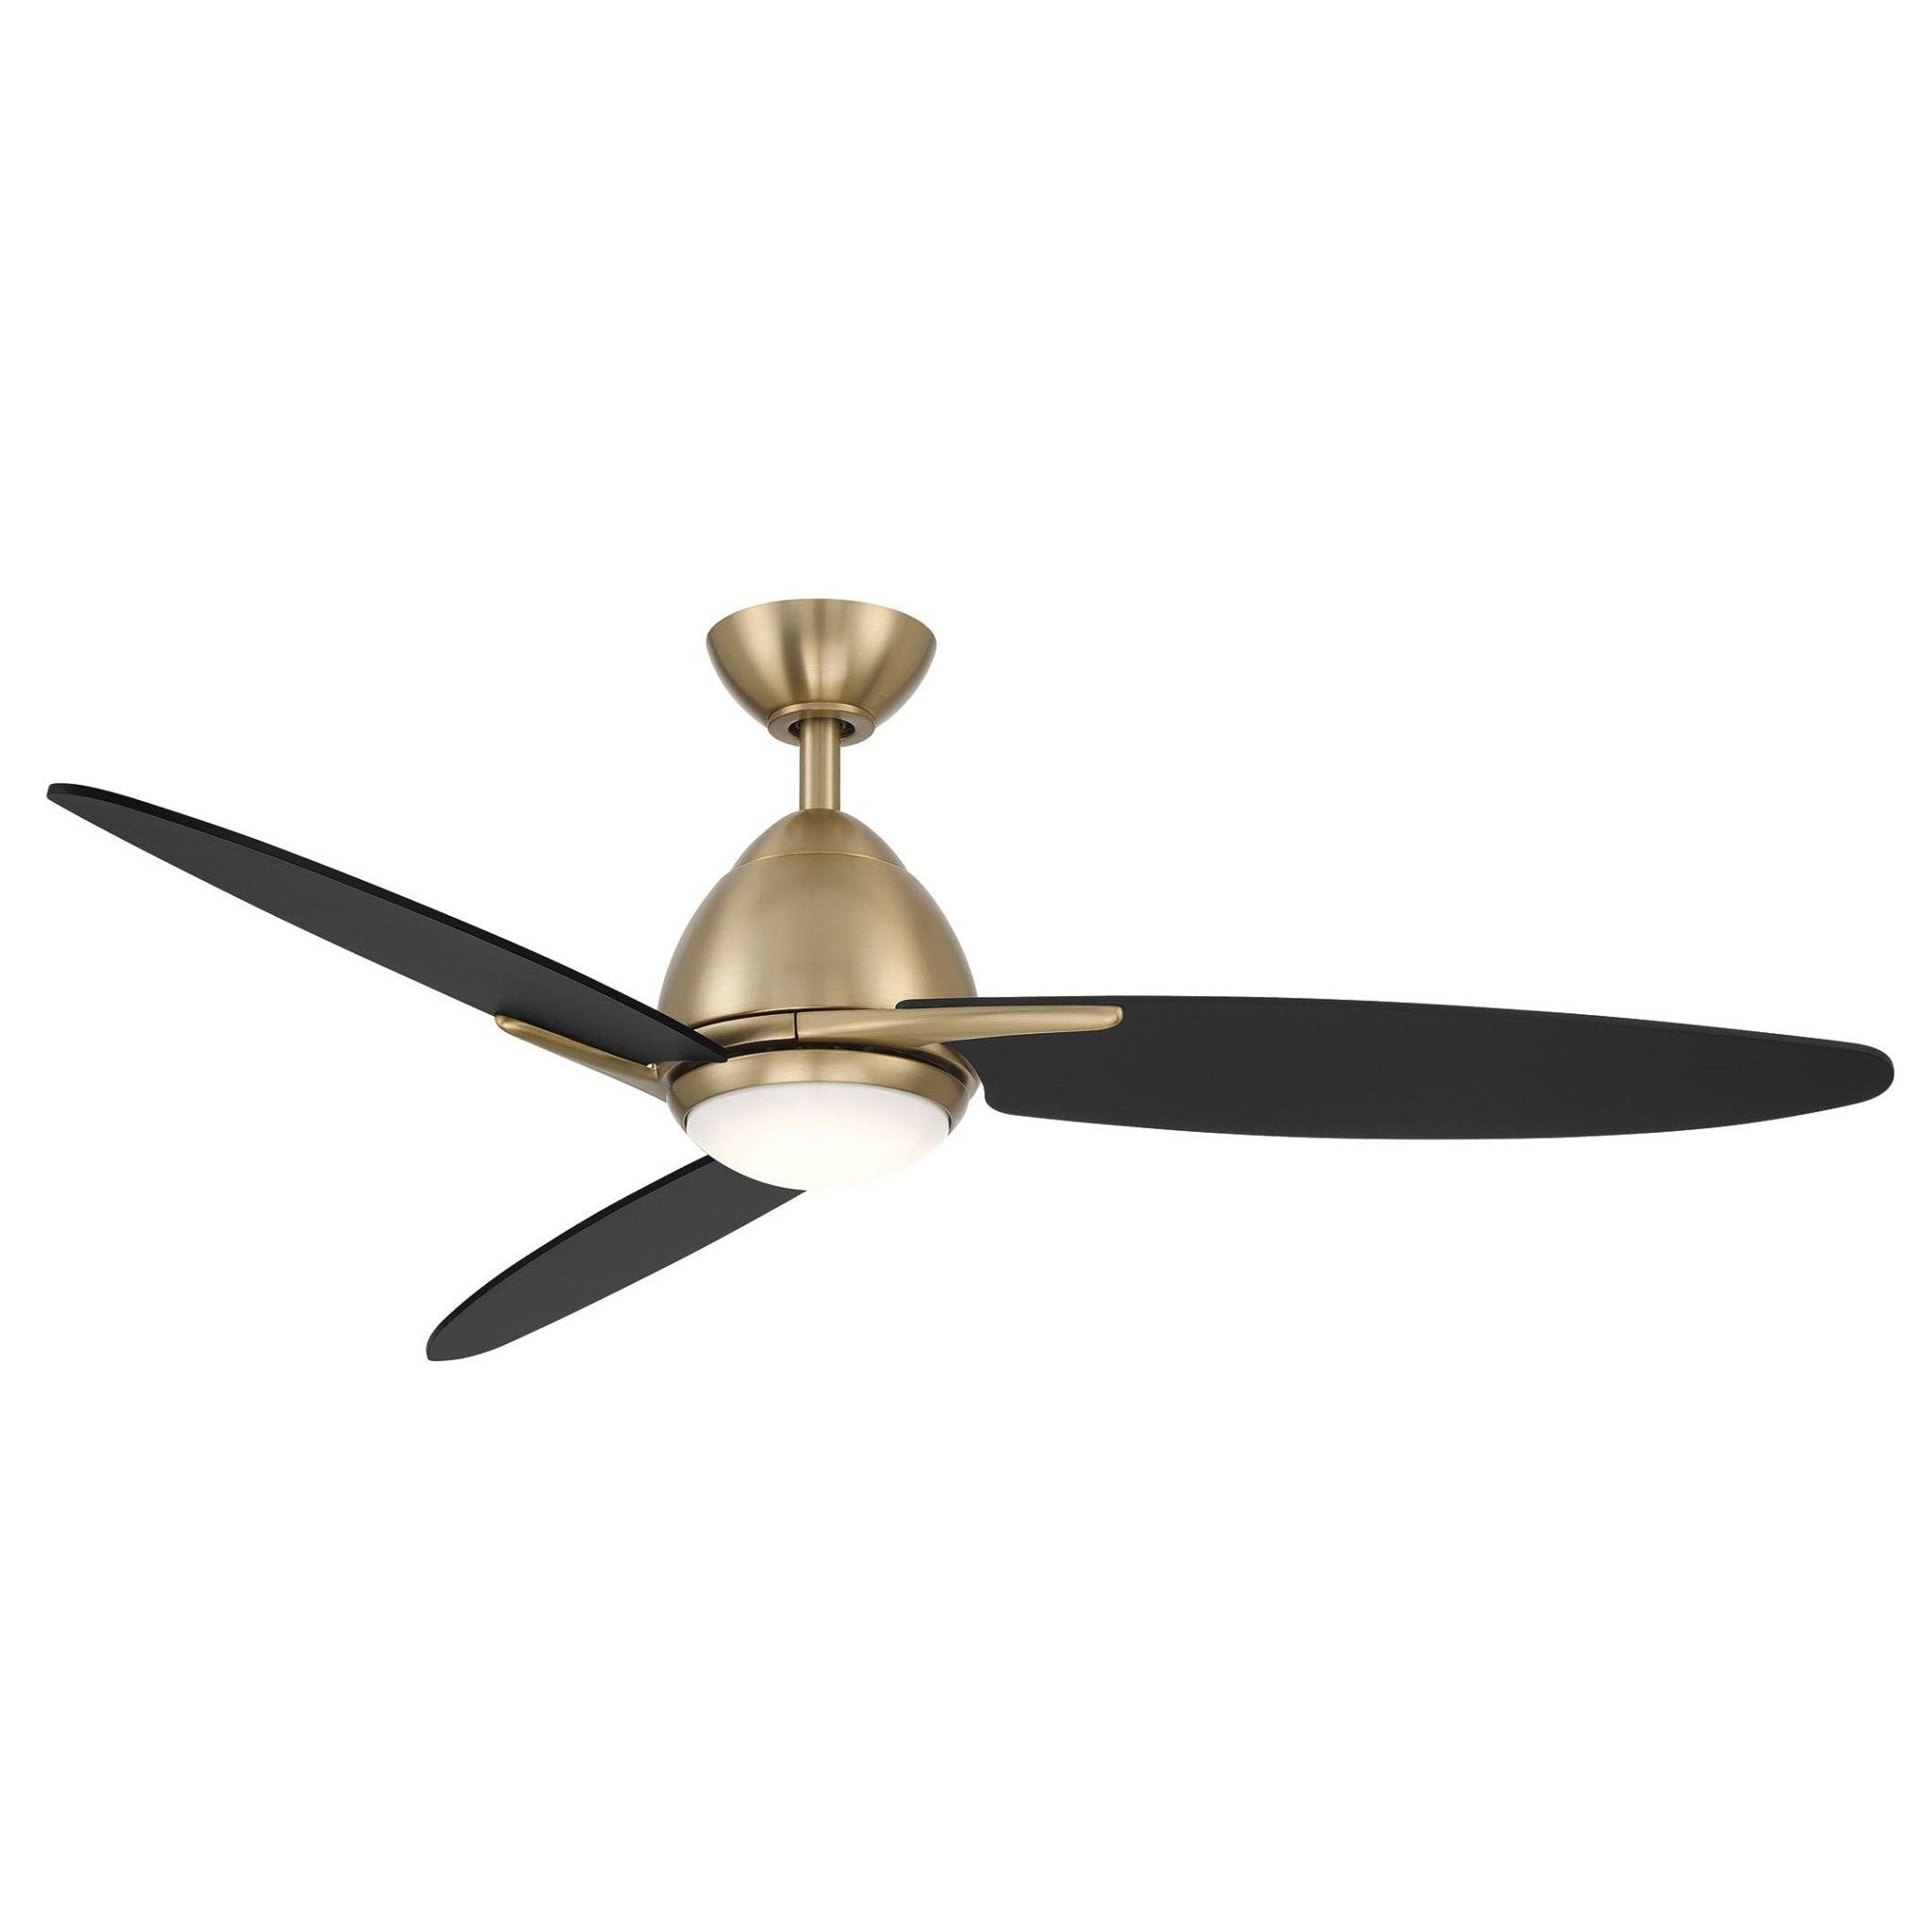 Wind River Atlas 52" LED Ceiling Fan - Image 1